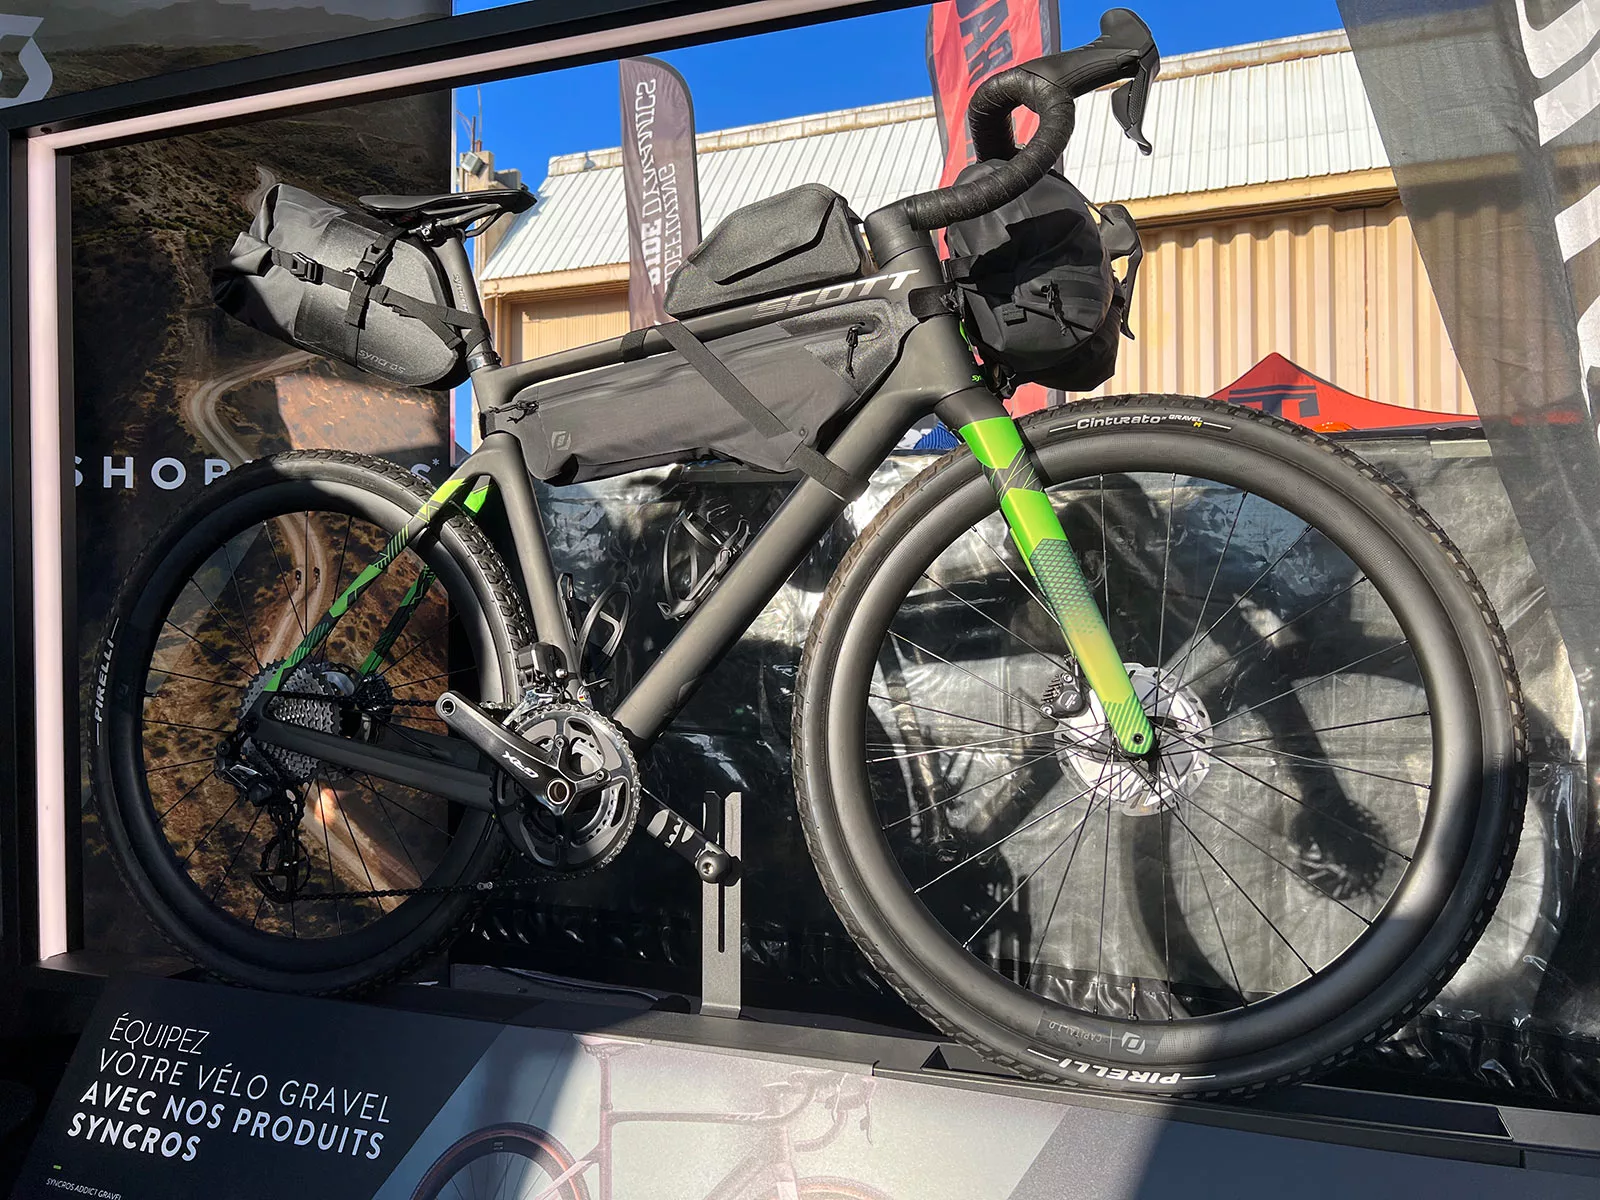 scott gravel bike with syncros frame bags for bikepacking